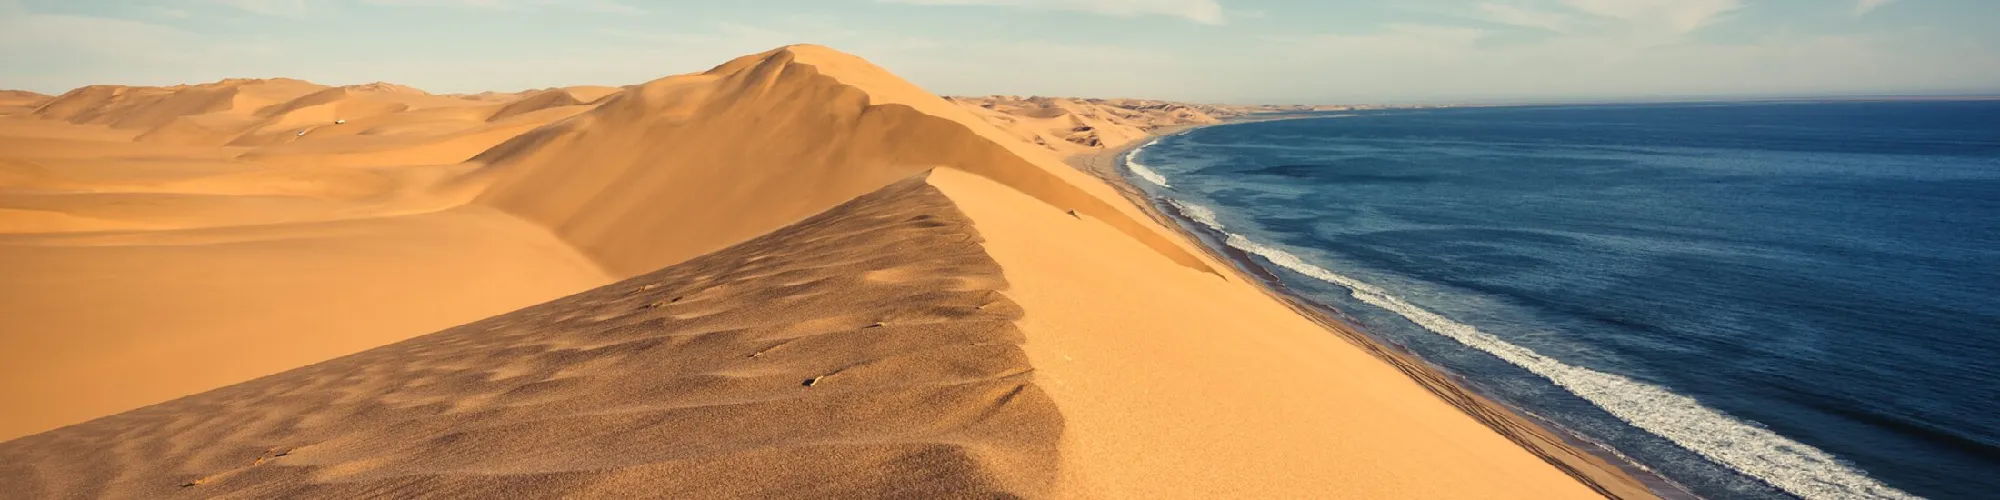 Fernreise nach Namibia background image